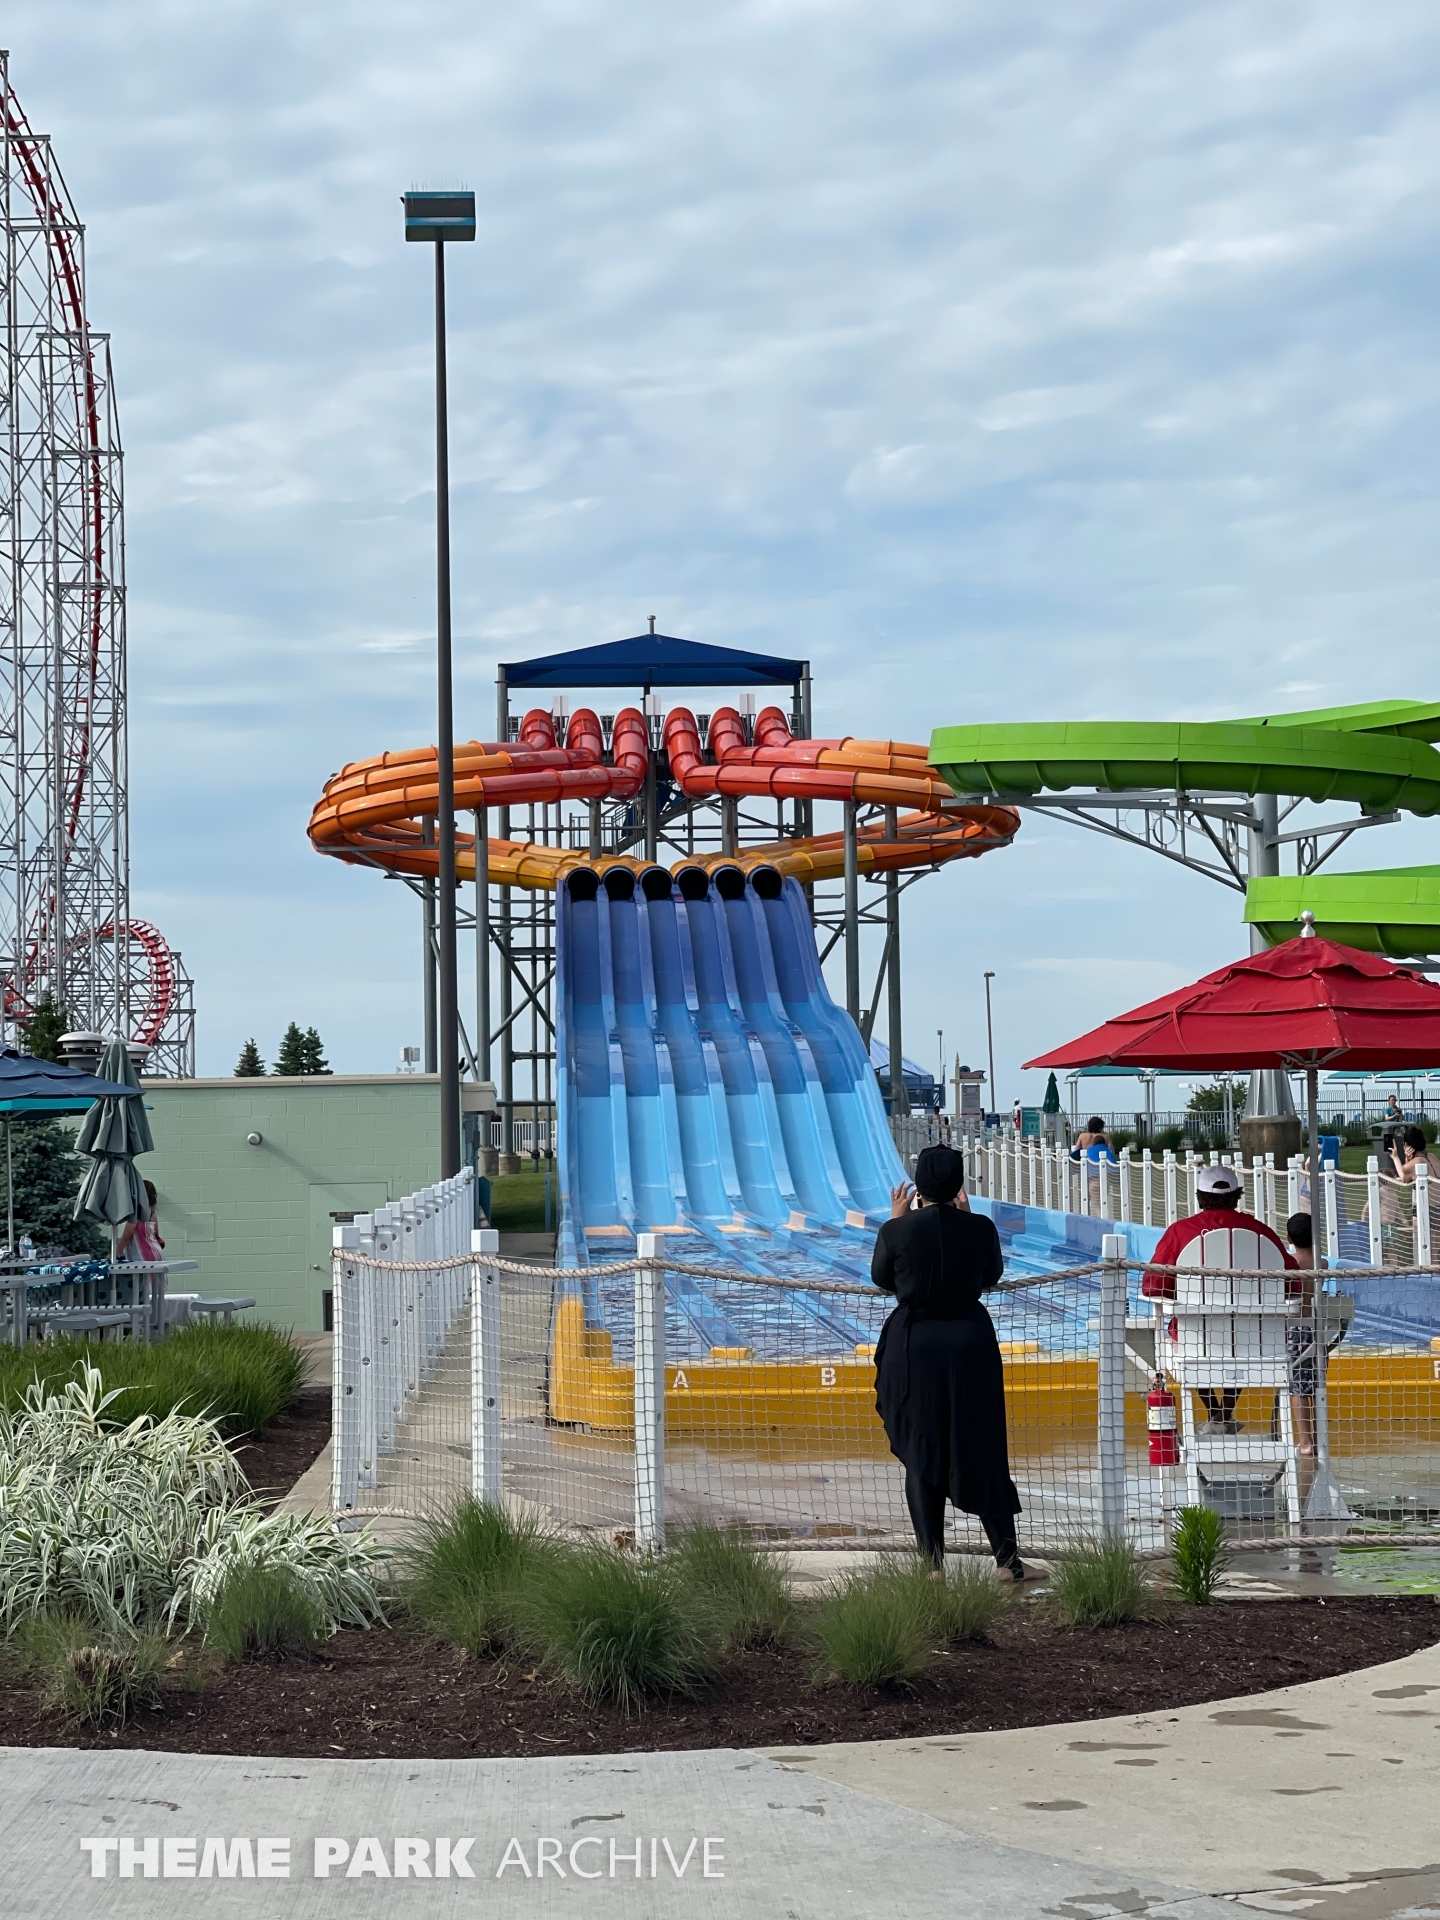 Riptide Raceway At Cedar Point Shores Theme Park Archive